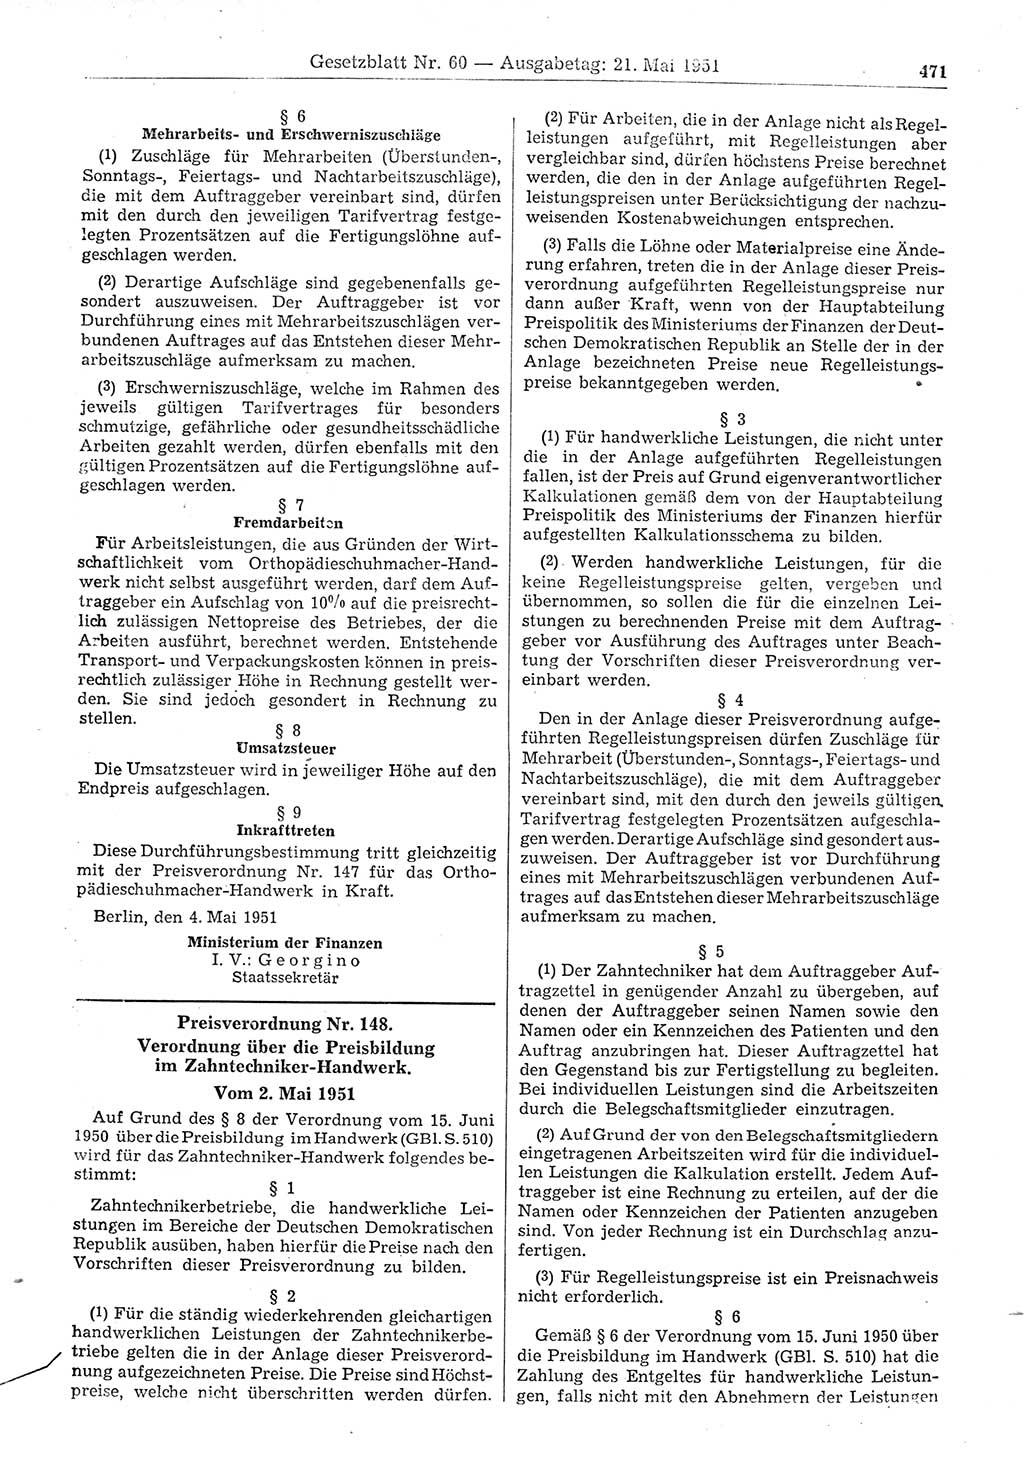 Gesetzblatt (GBl.) der Deutschen Demokratischen Republik (DDR) 1951, Seite 471 (GBl. DDR 1951, S. 471)